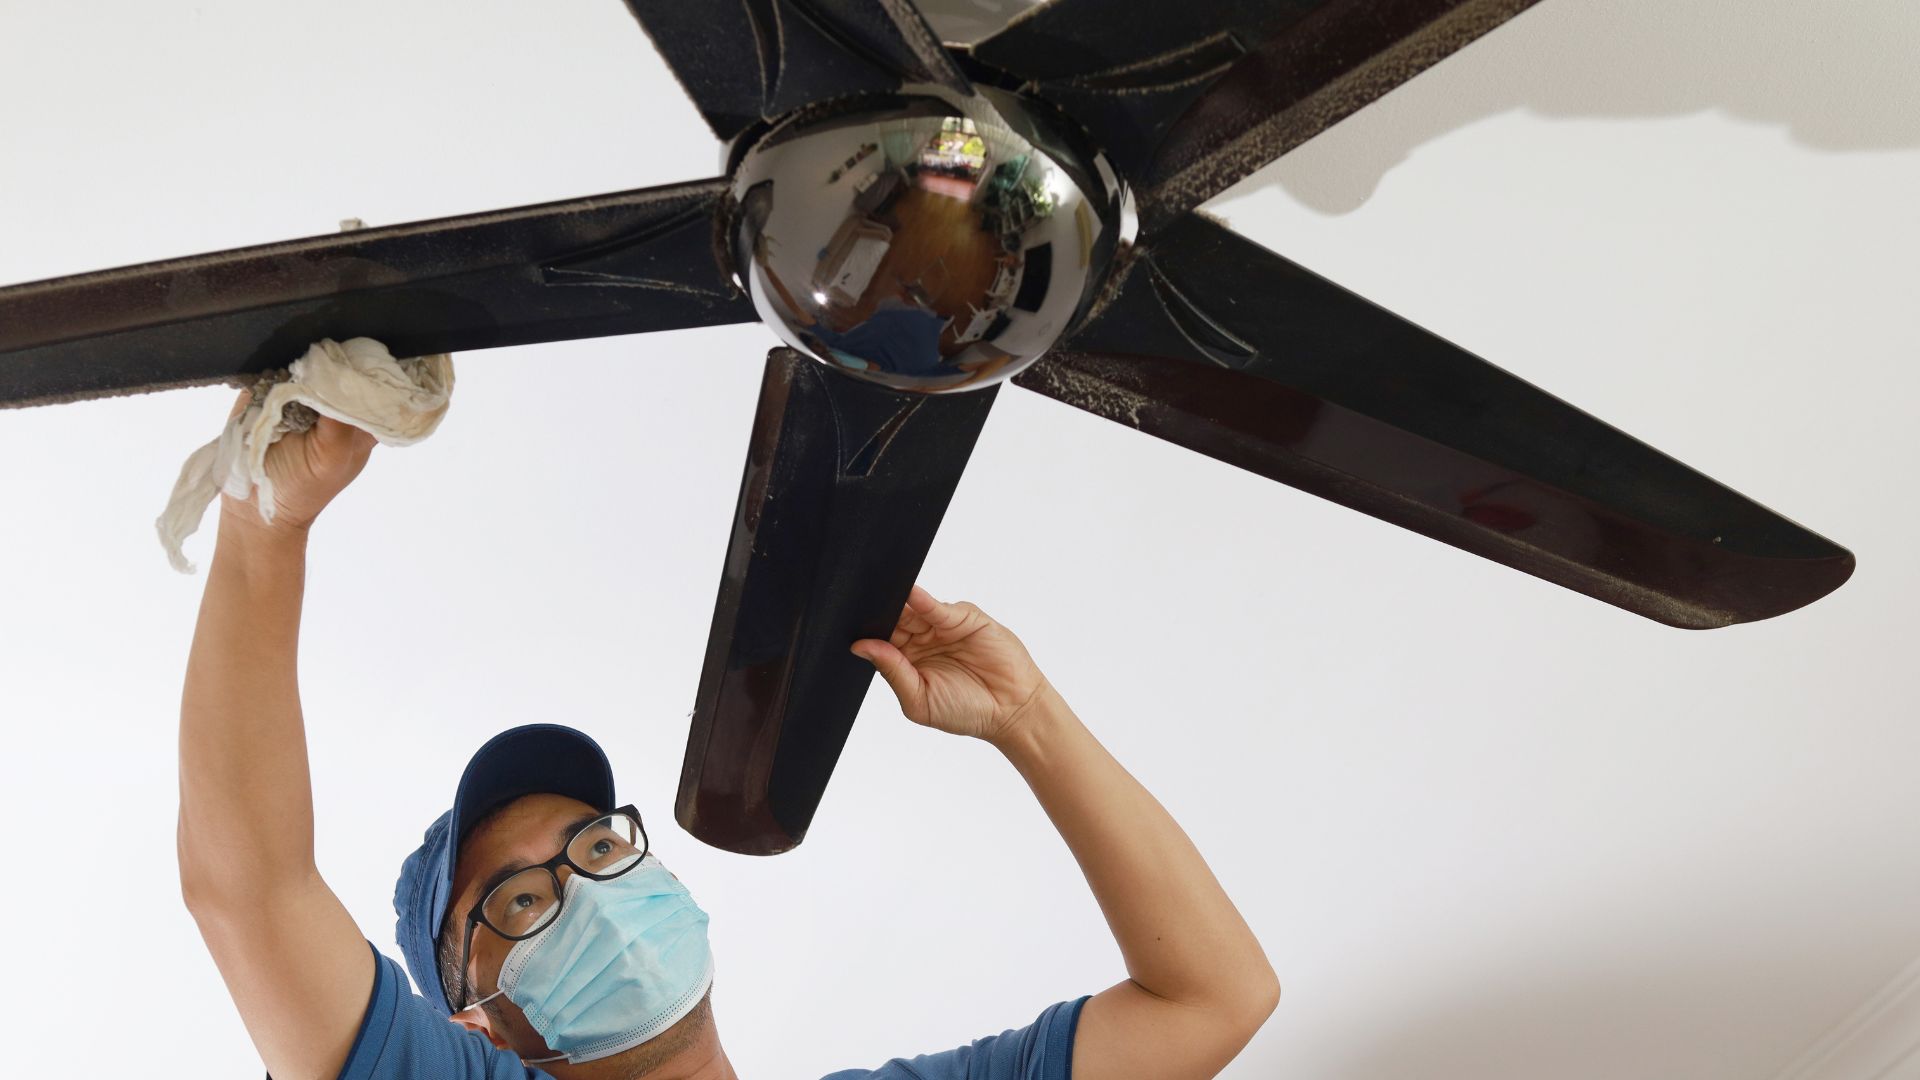 Men cleaning ceiling fan